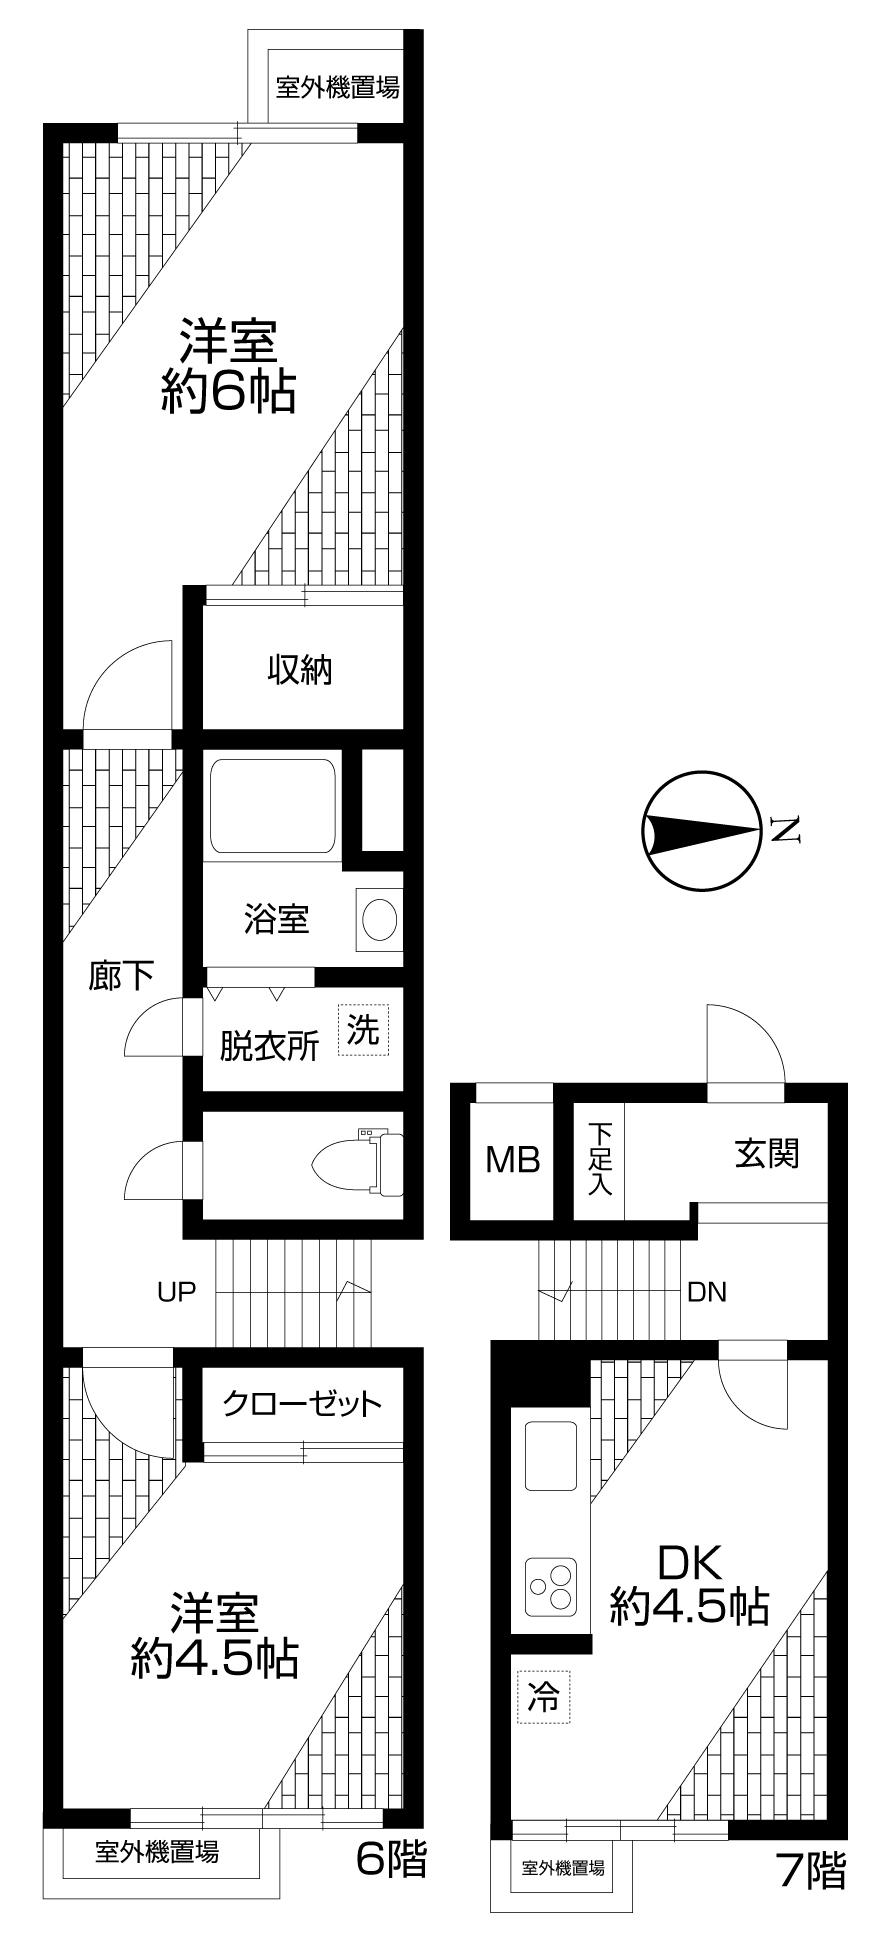 Floor plan. 2DK, Price 13.8 million yen, Occupied area 51.74 sq m